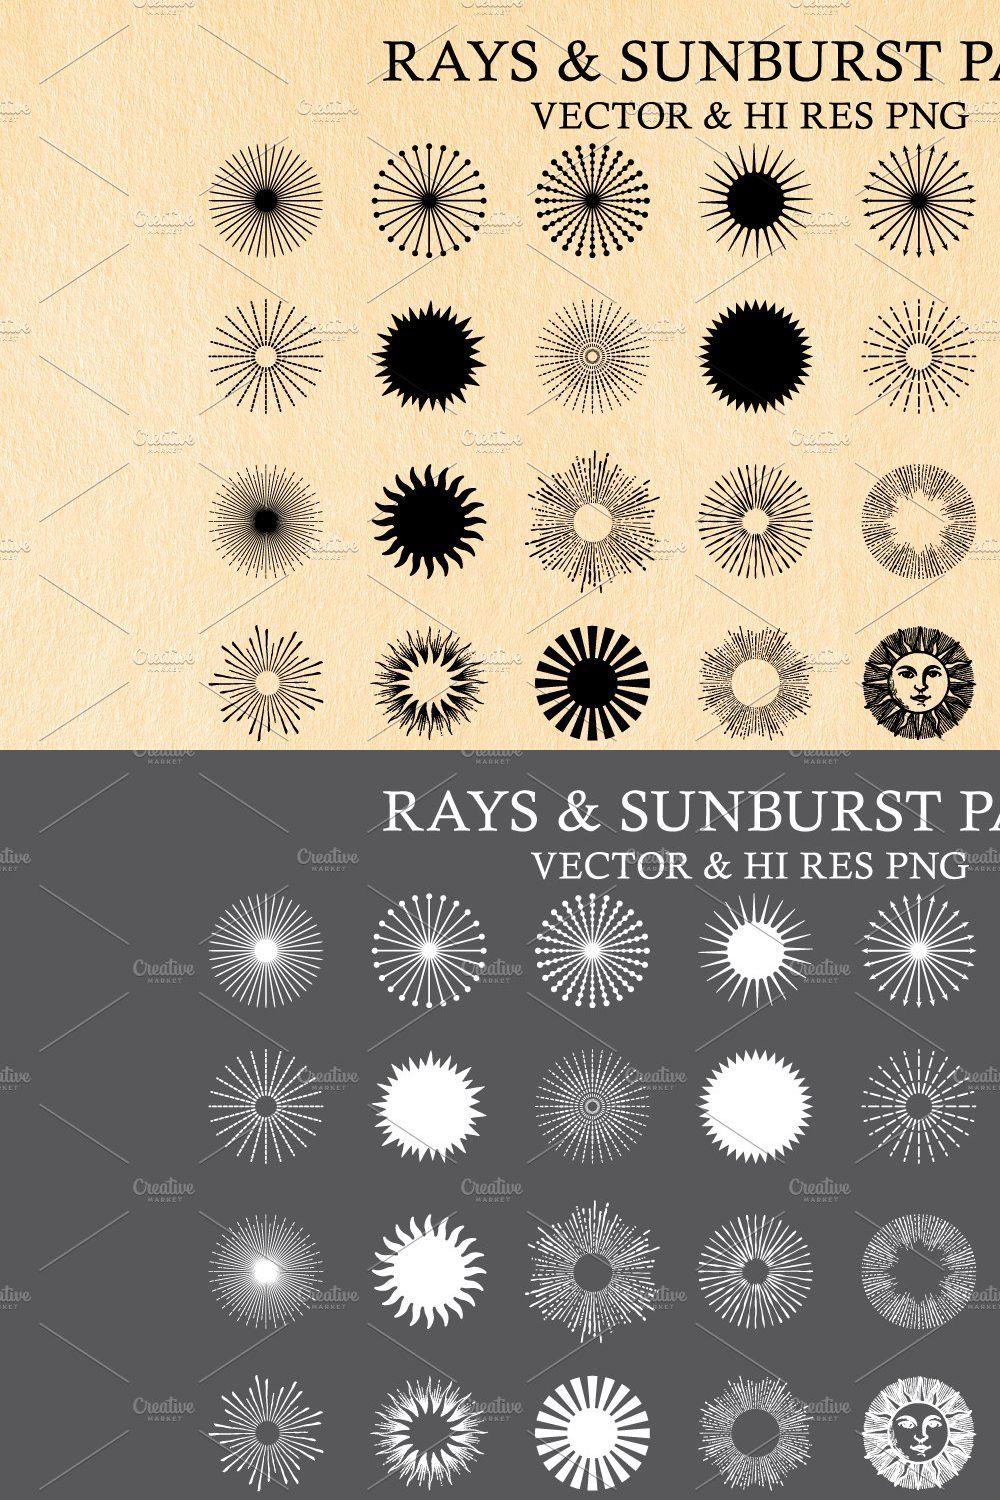 Light Rays & Sunburst Vector Pack pinterest preview image.